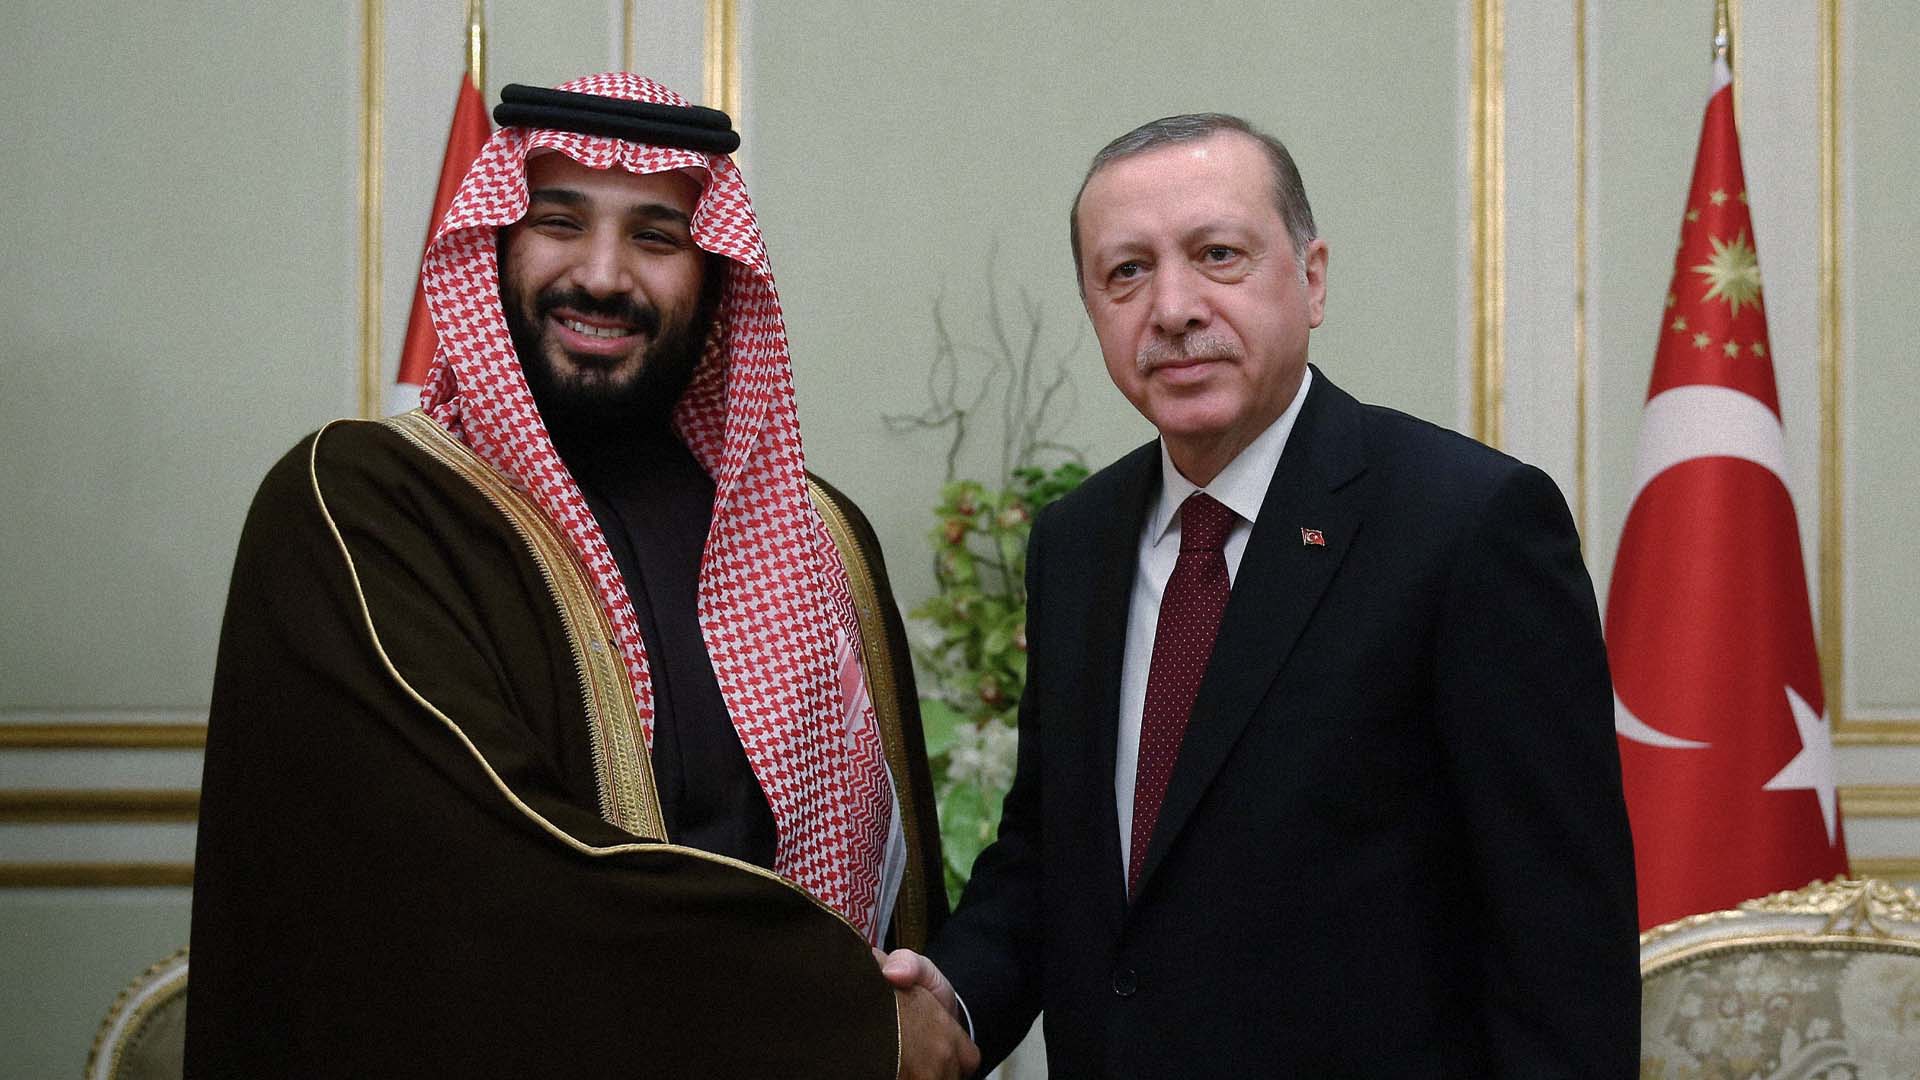 صورة إردوغان يغلق ملف خاشقجي لأن النفط أبقى من الميت